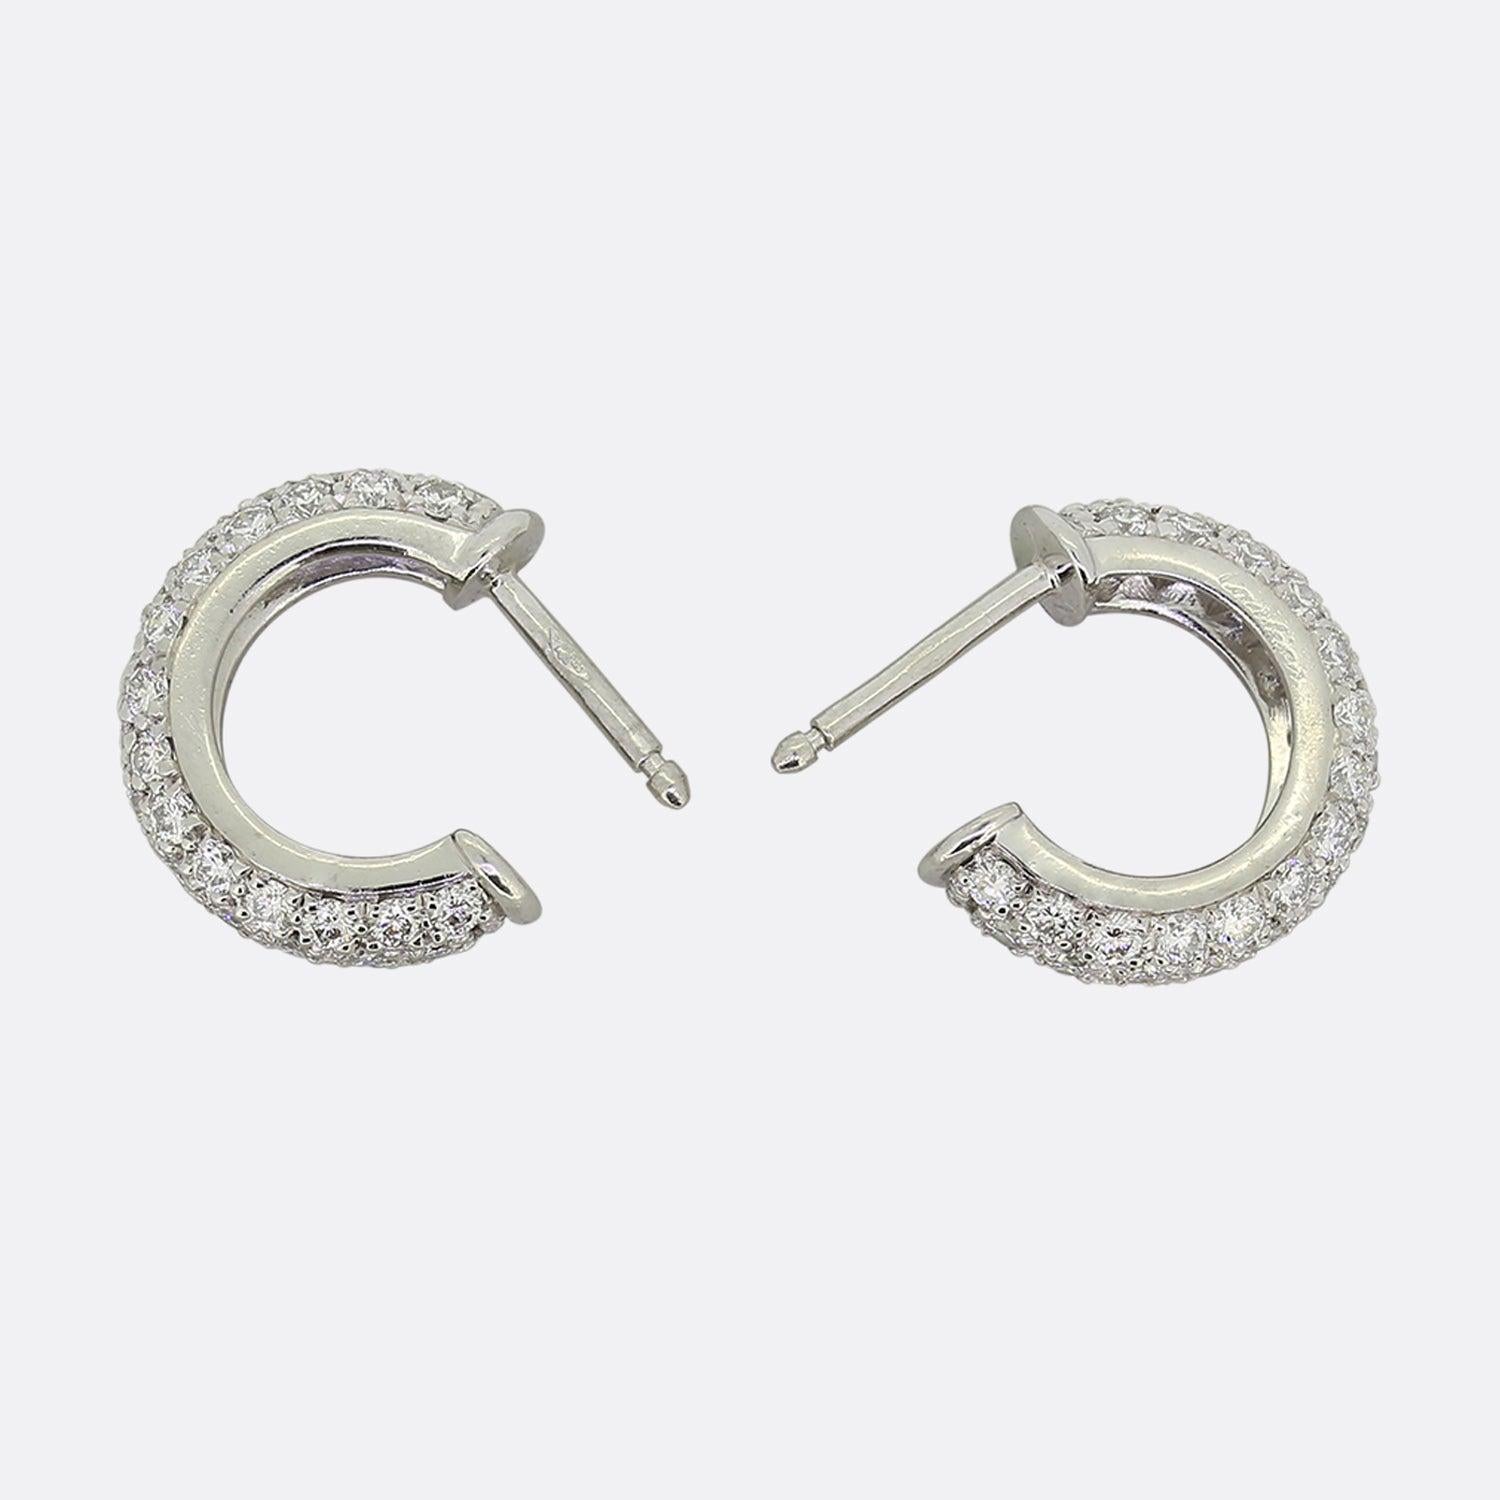 Dies ist ein fabelhaftes Paar kleiner Platin-Diamant-Ohrringe aus dem weltbekannten Schmuckhaus Cartier. Jedes Stück hat die Form eines Reifs, der mit einer Reihe von runden Diamanten im Brillantschliff besetzt ist. 

Zustand: Gebraucht (Sehr